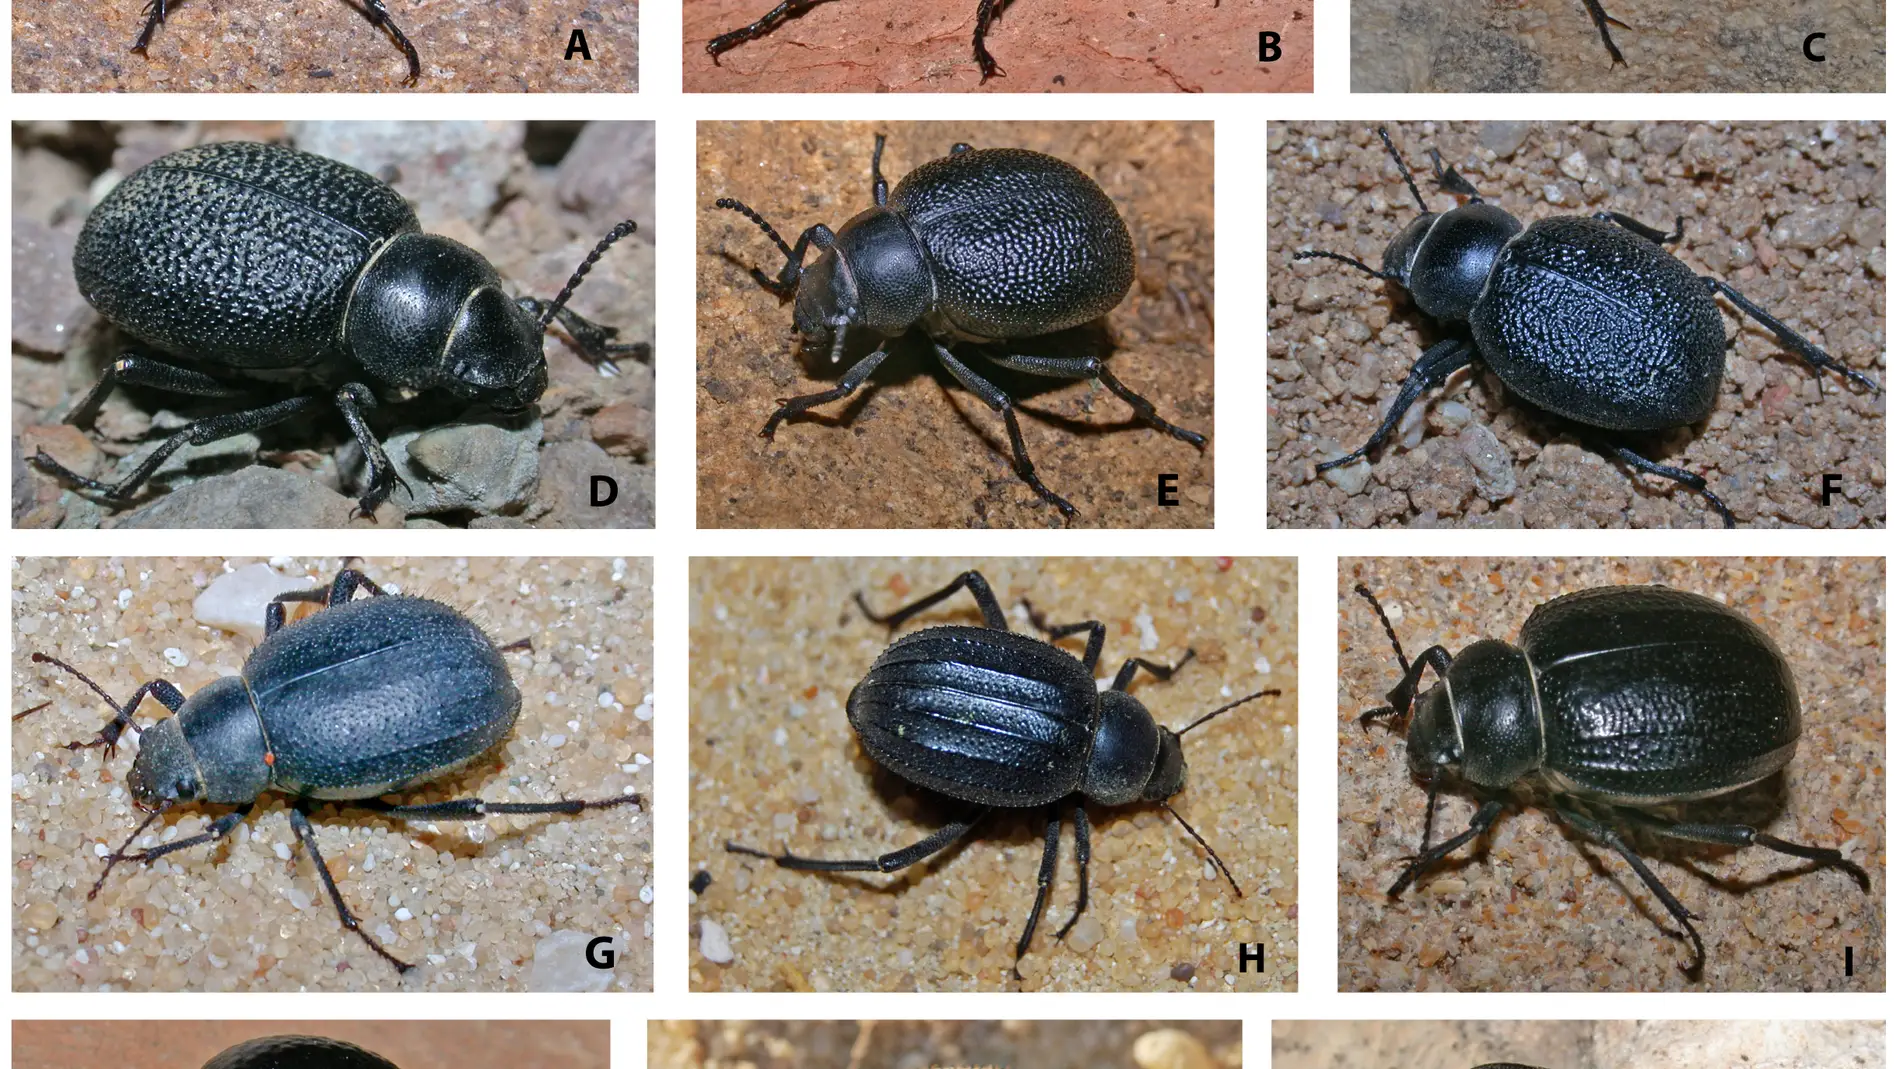 Los cambios geologicos determinaron la evolucion de los escarabajos